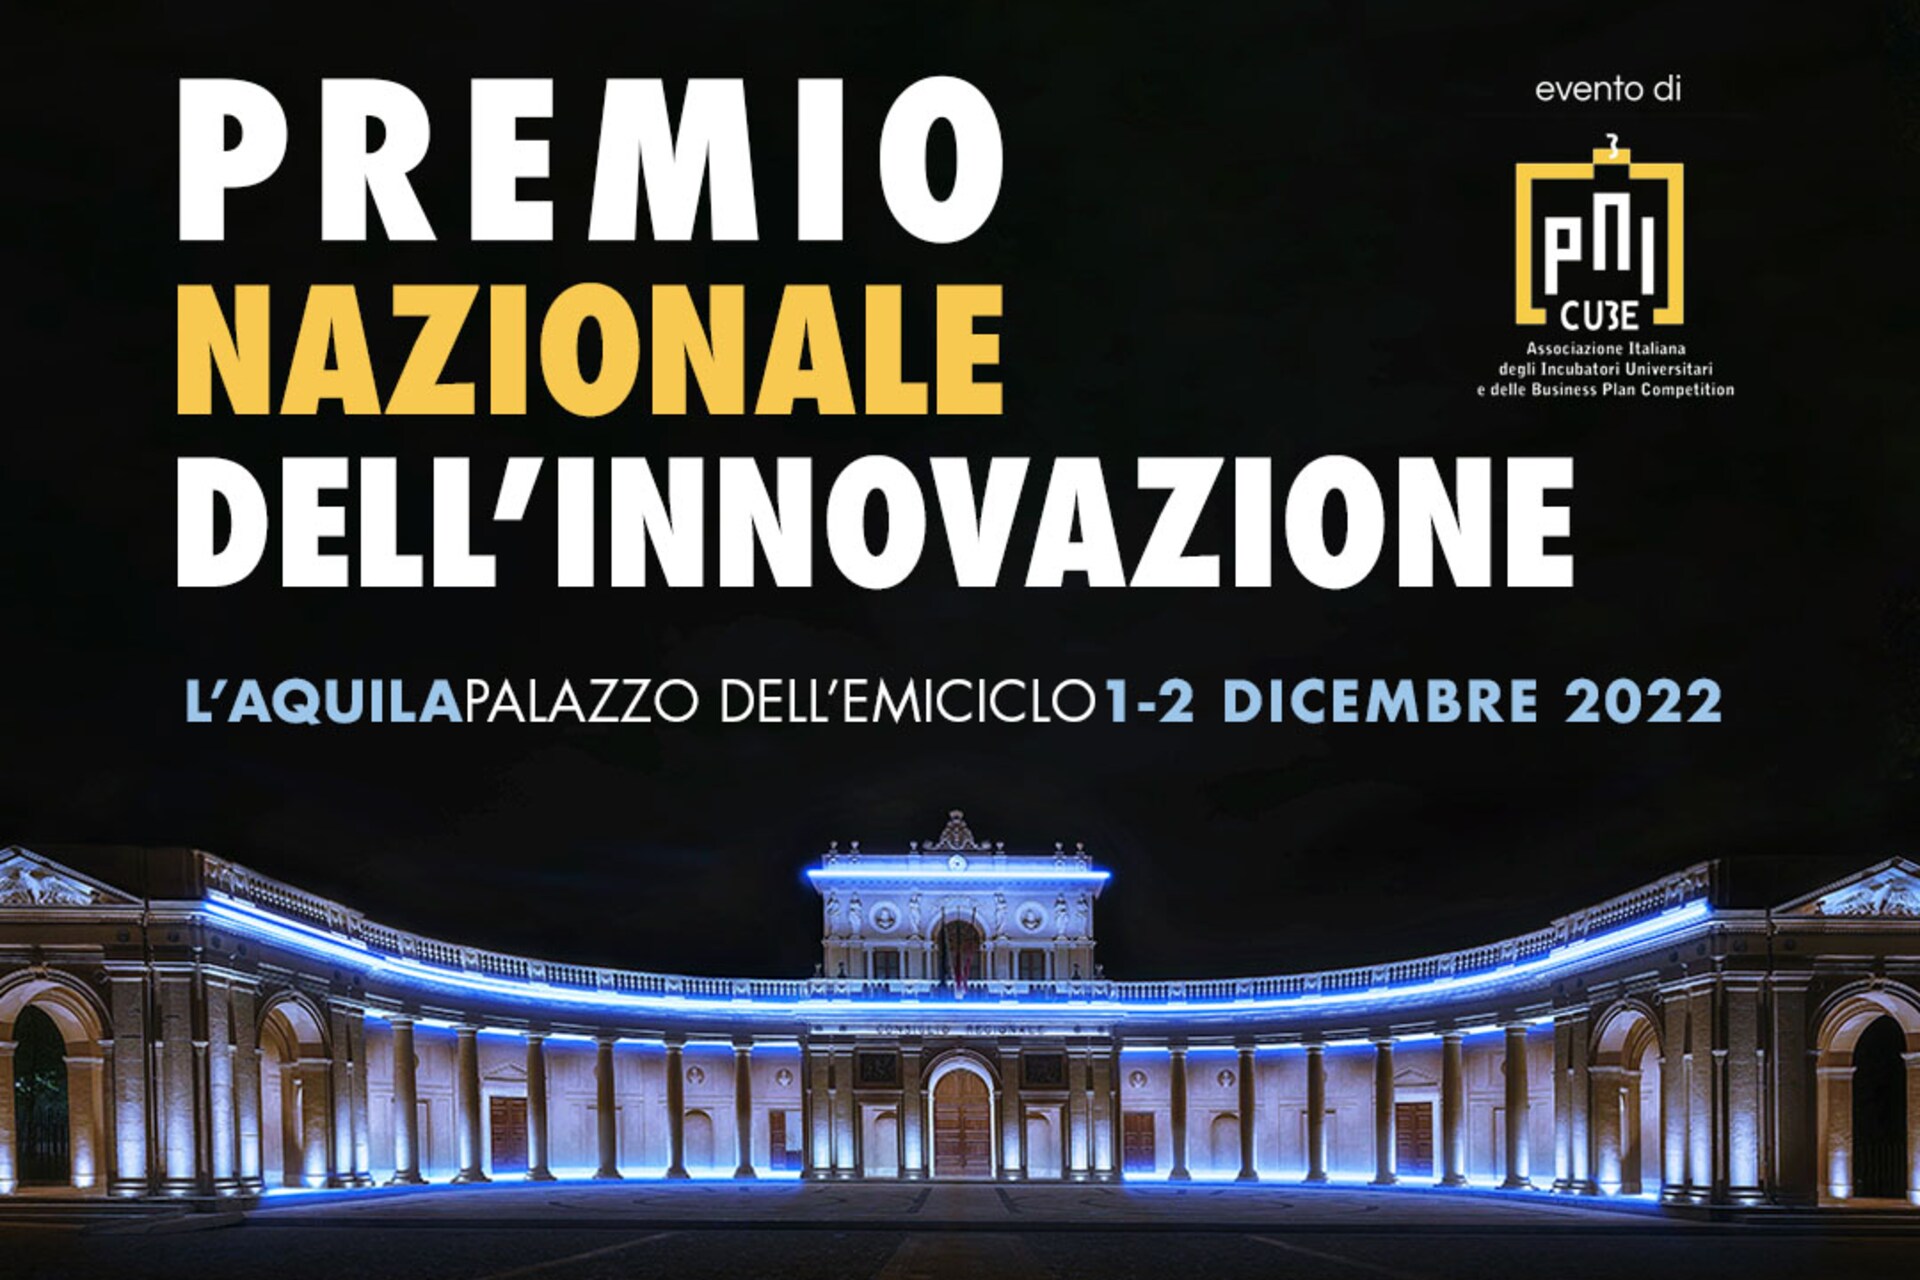 Улуттук инновация сыйлыгы: Италиядагы "Улуттук инновациялар сыйлыгынын" 2022-жылдагы чыгарылышынын негизги визуалдуулугу